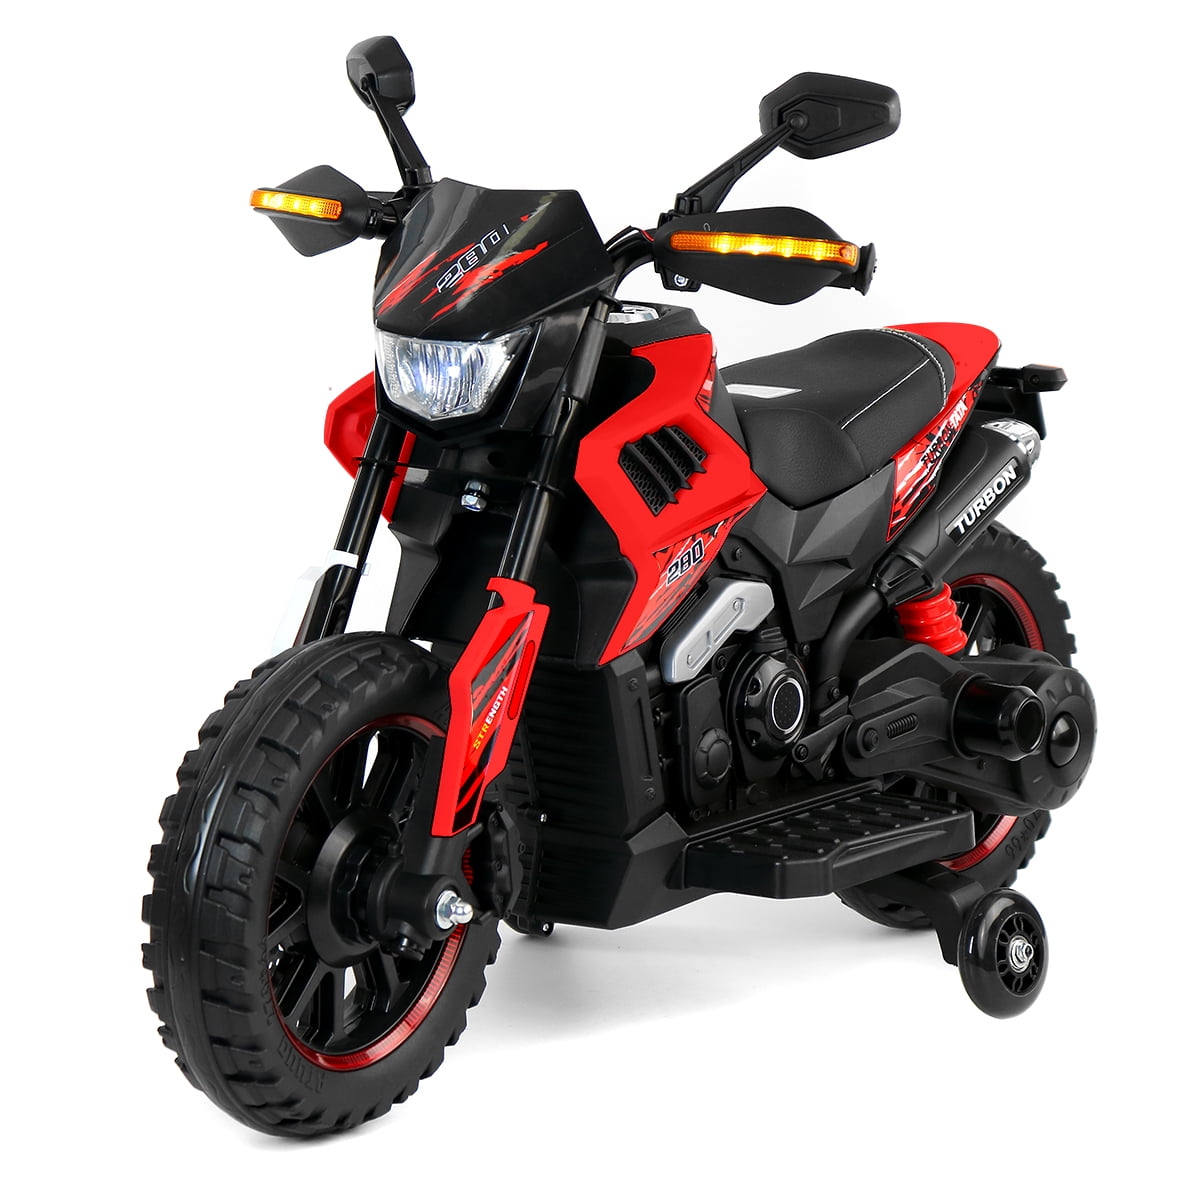 Details about   12V Kids Ride On Motorcycle Electric Motor Bike w/LED Lights Children Gift Black 